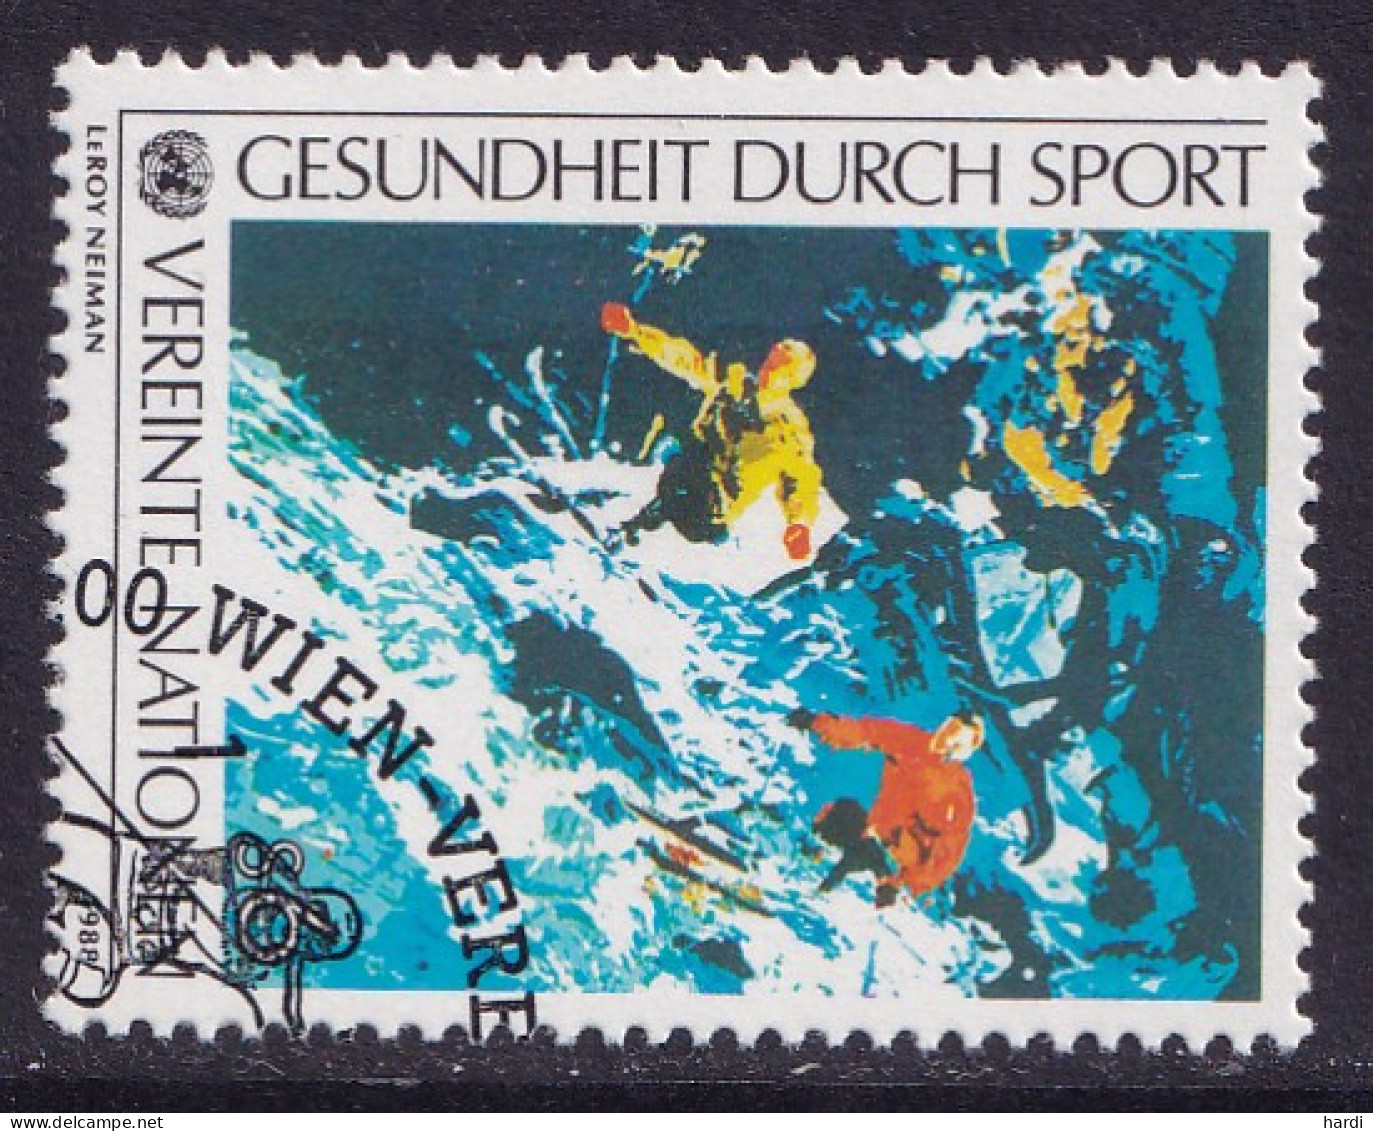 Vereinte Nationen Wien 1988, MiNr.: 86, Gestempelt - Used Stamps